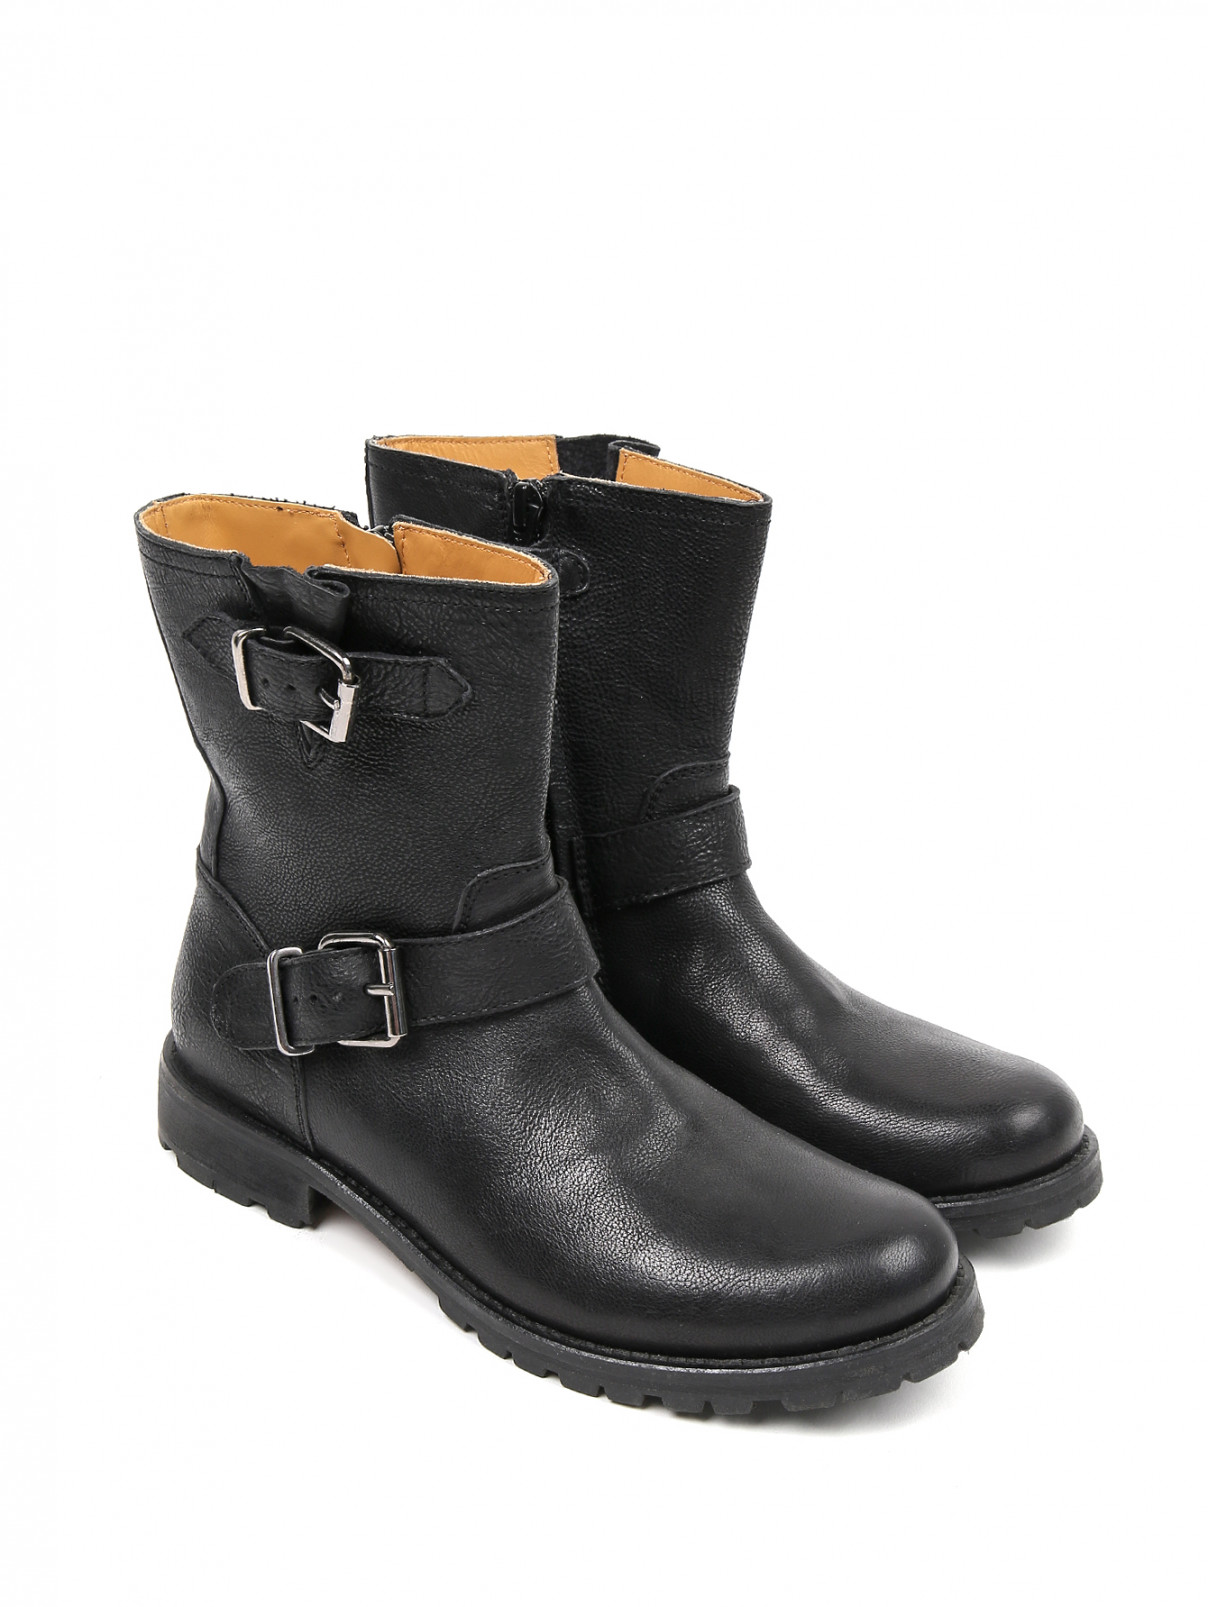 Ботинки из кожи с пряжками Gallucci  –  Общий вид  – Цвет:  Черный